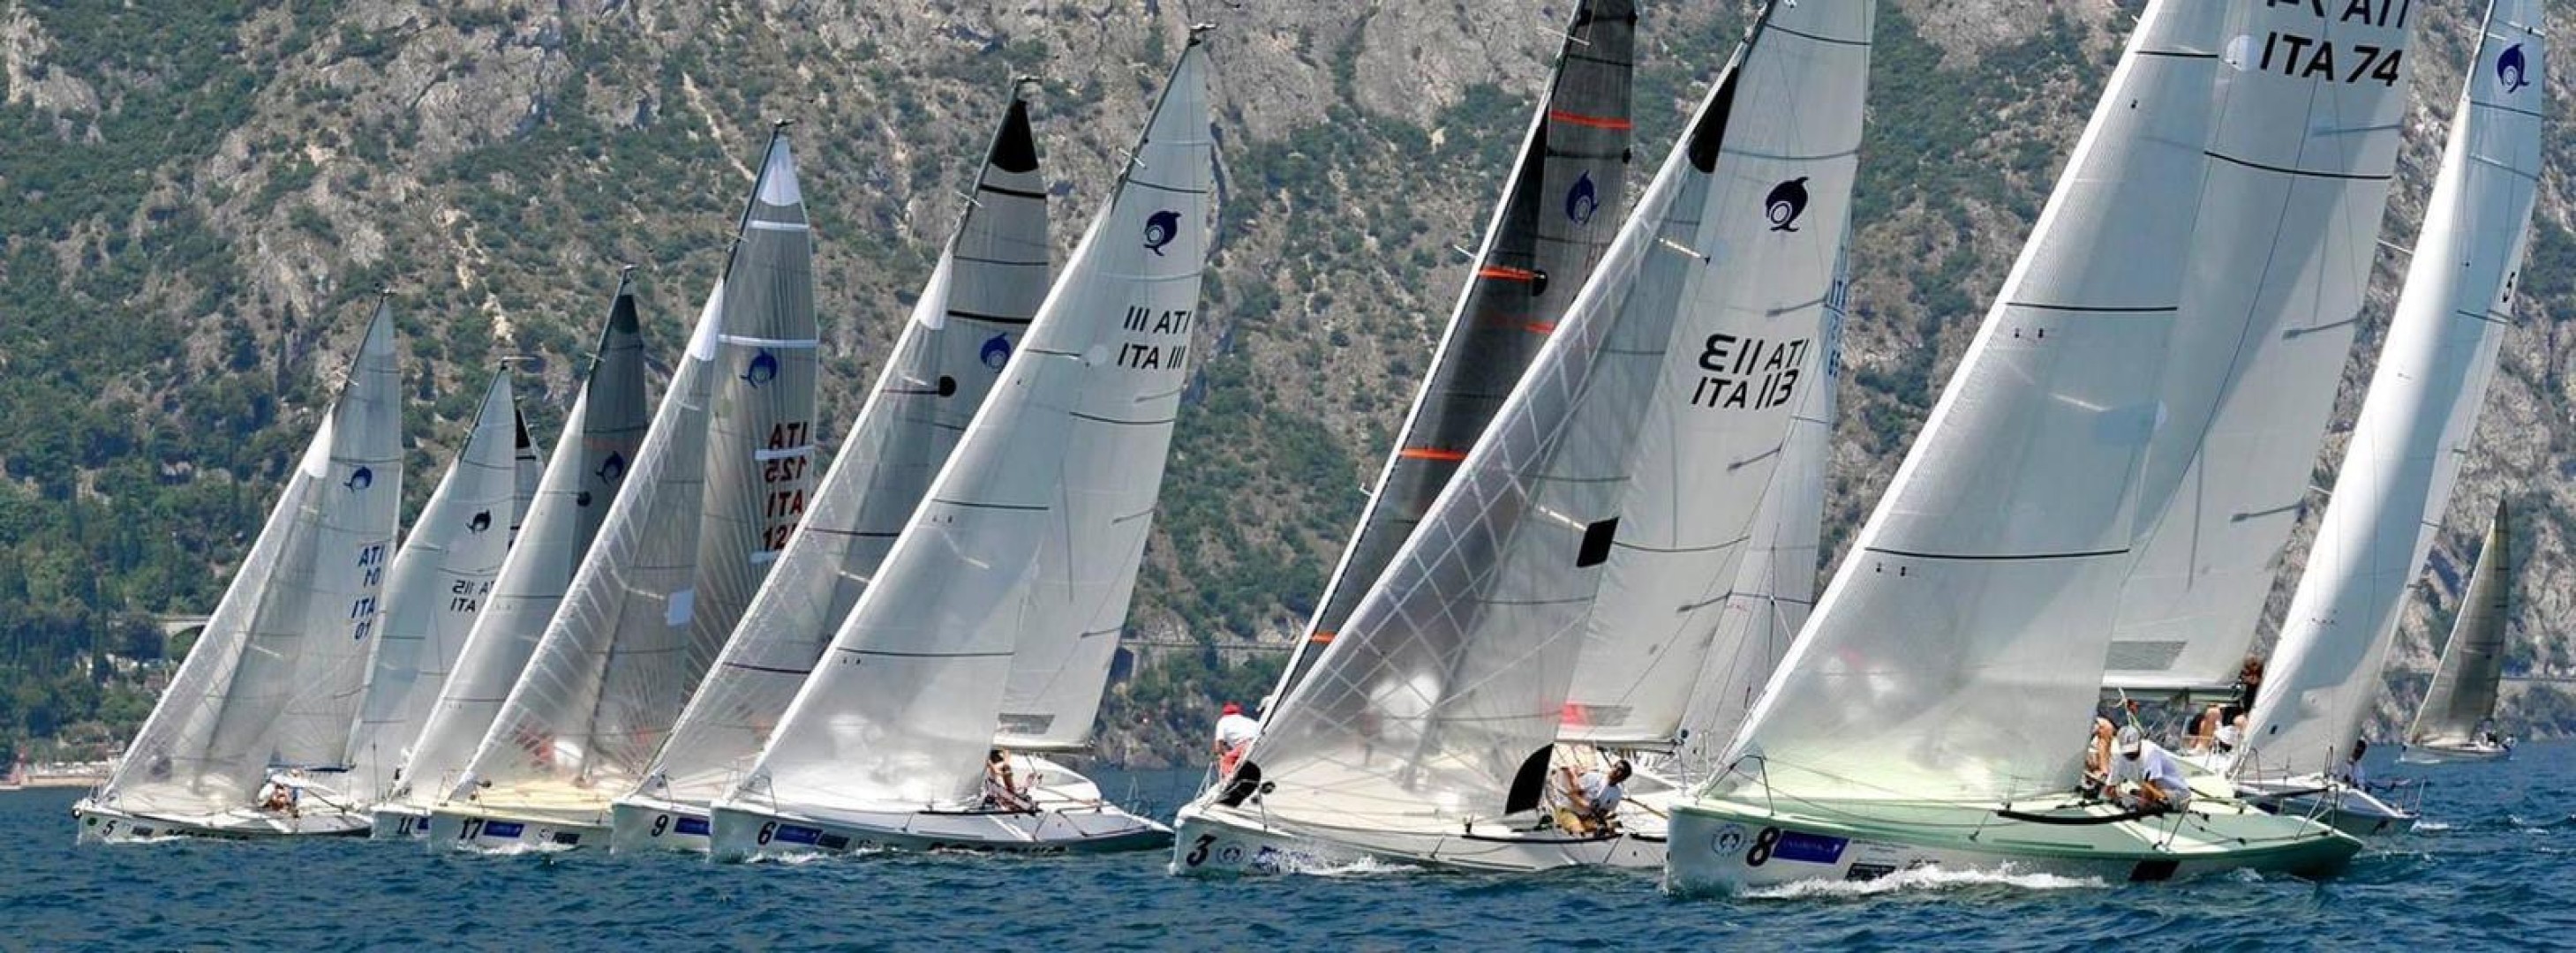 Campionato Italiano ed Euro Cup del Dolphin 81 al Lago di Garda